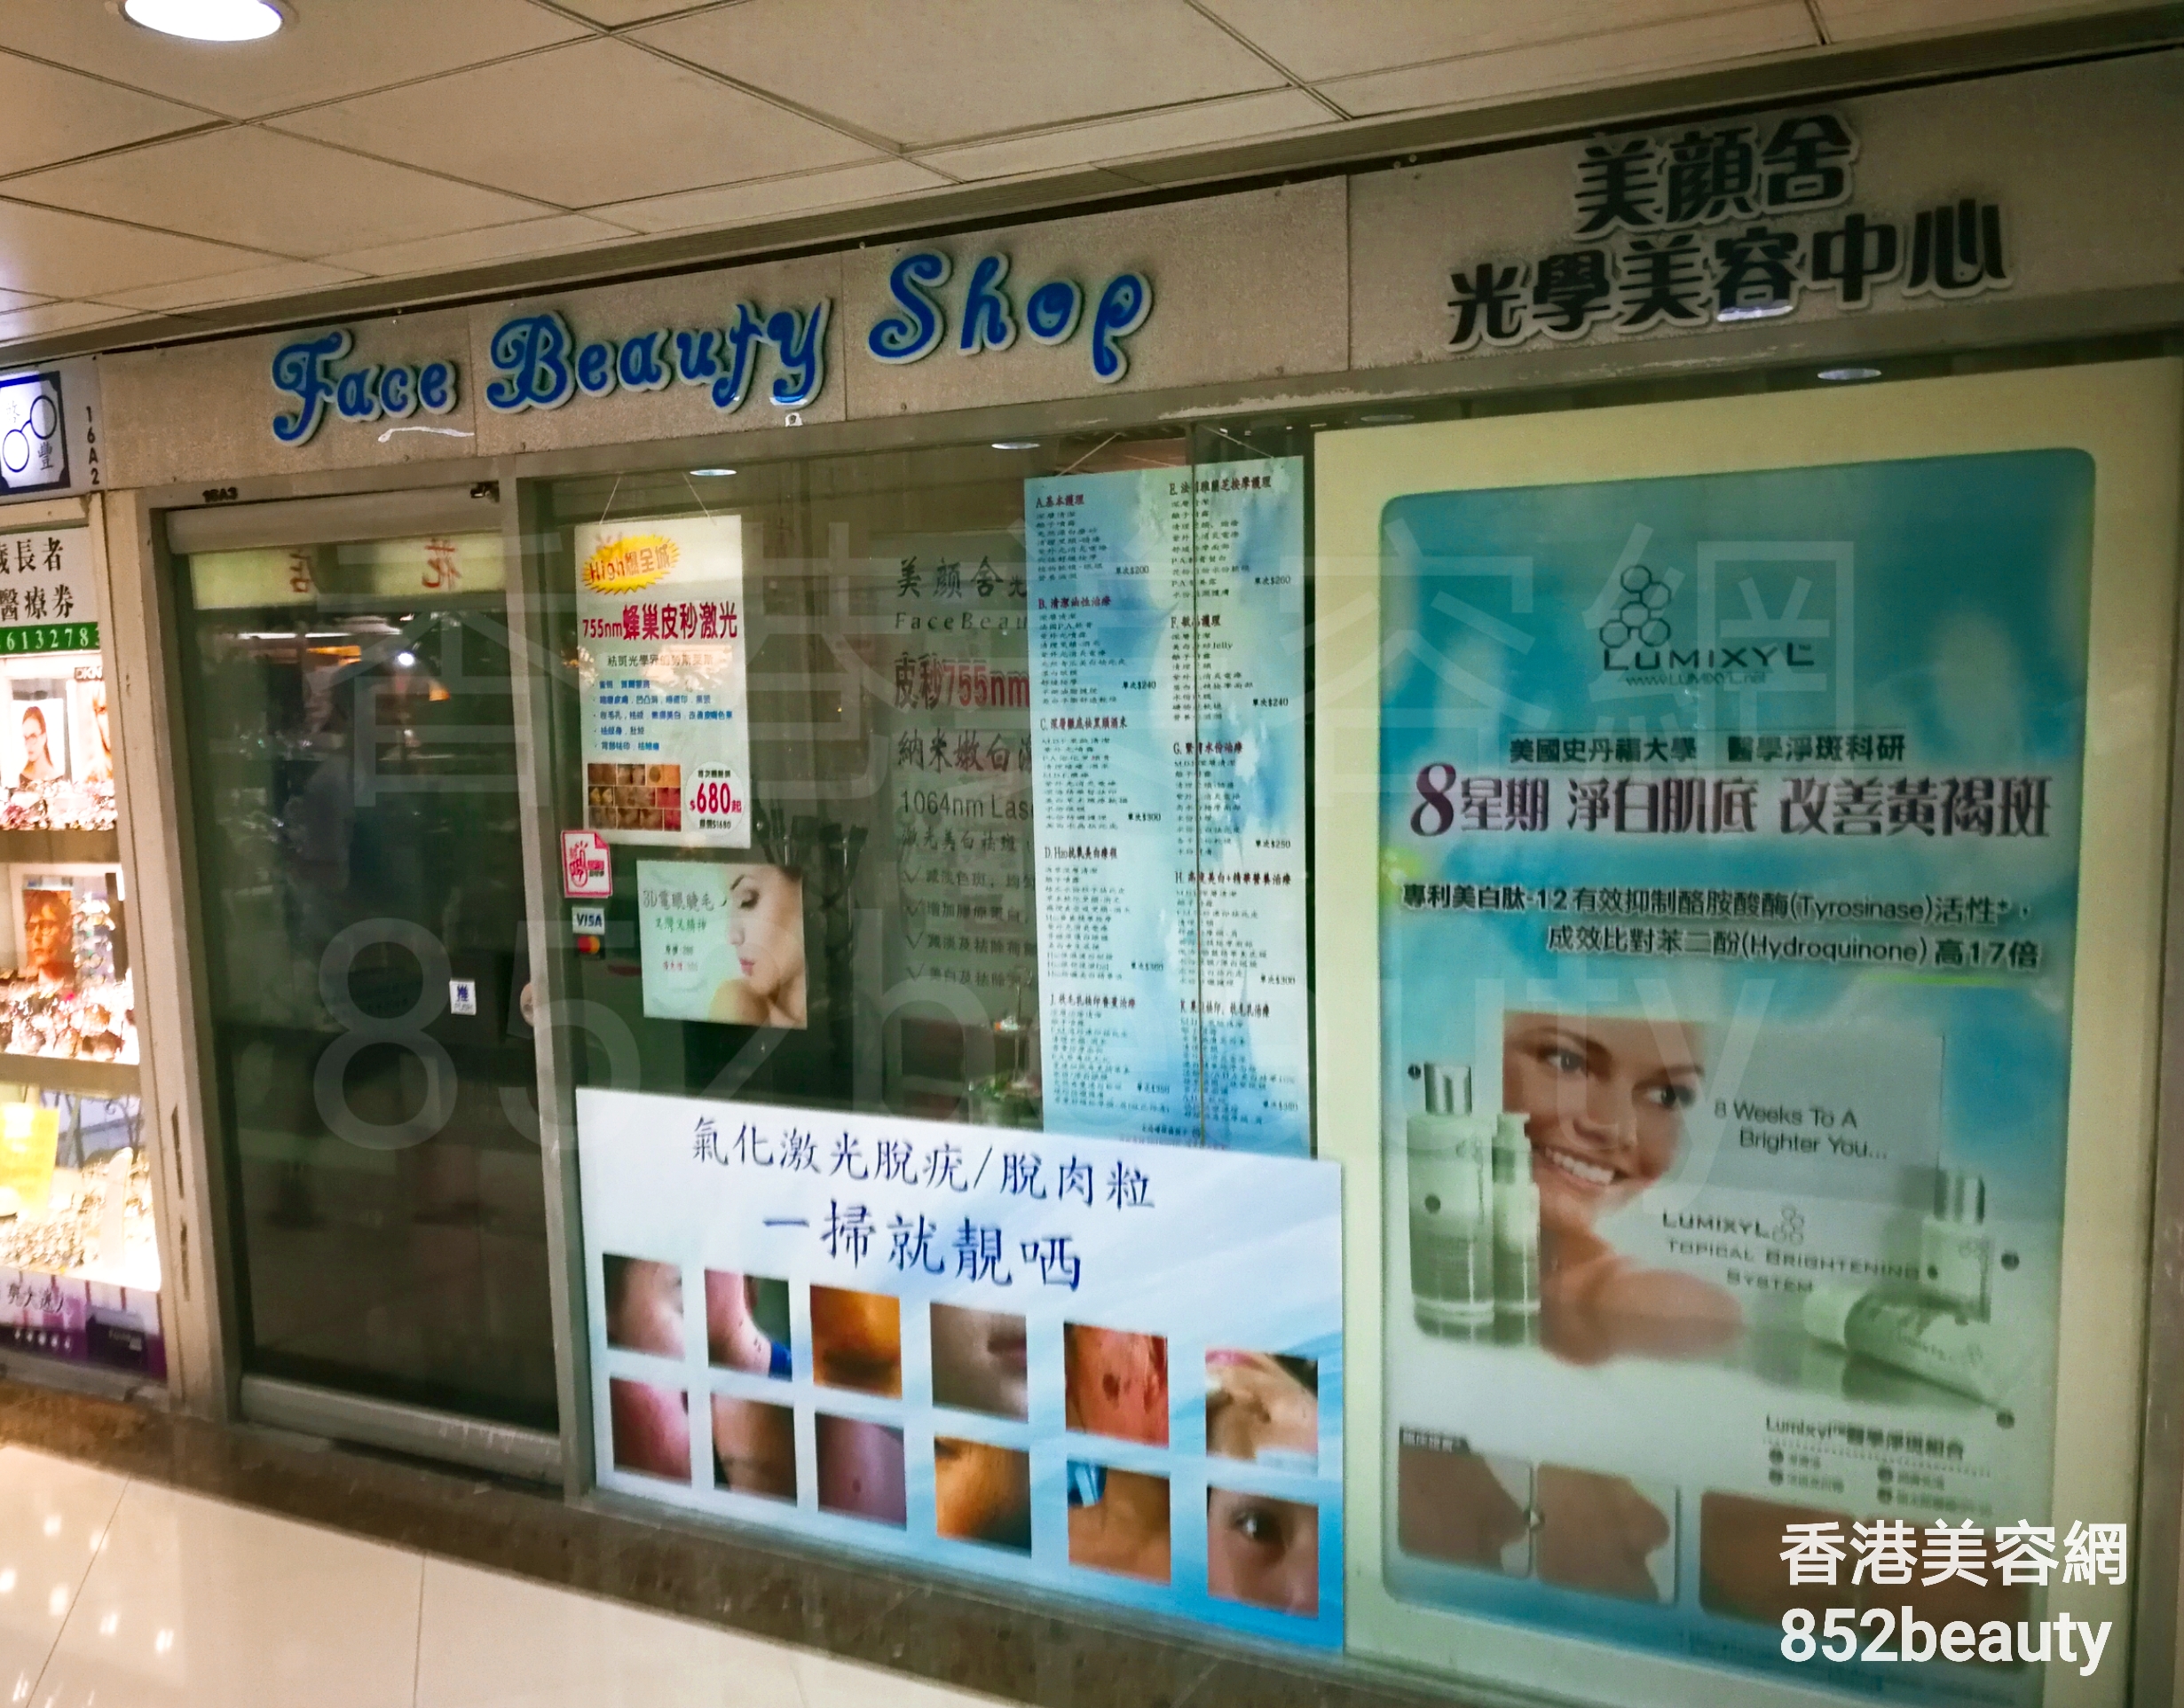 香港美容網 Hong Kong Beauty Salon 美容院 / 美容師: Face Beauty Shop 美顏舍光學美容中心